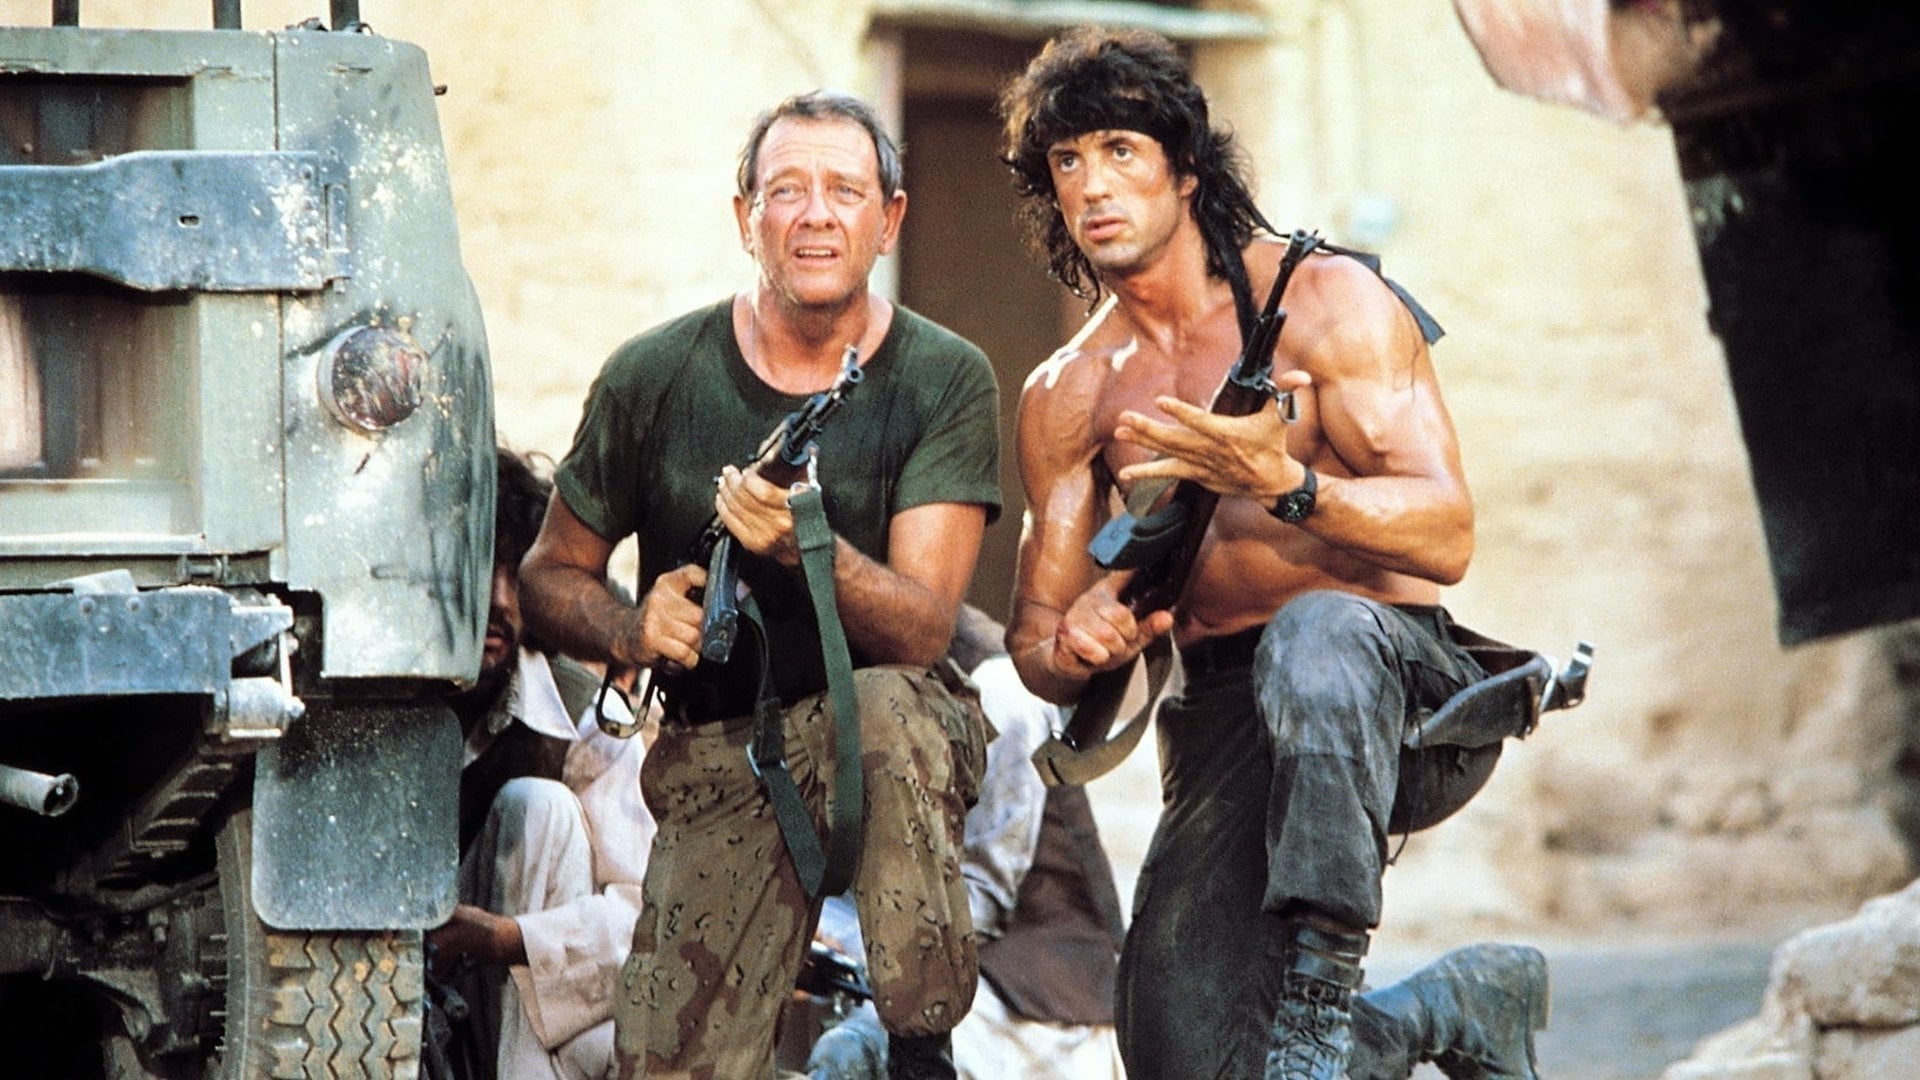 Image du film Rambo III f1prhfpspkqa6okipnnomp0stkhjpg